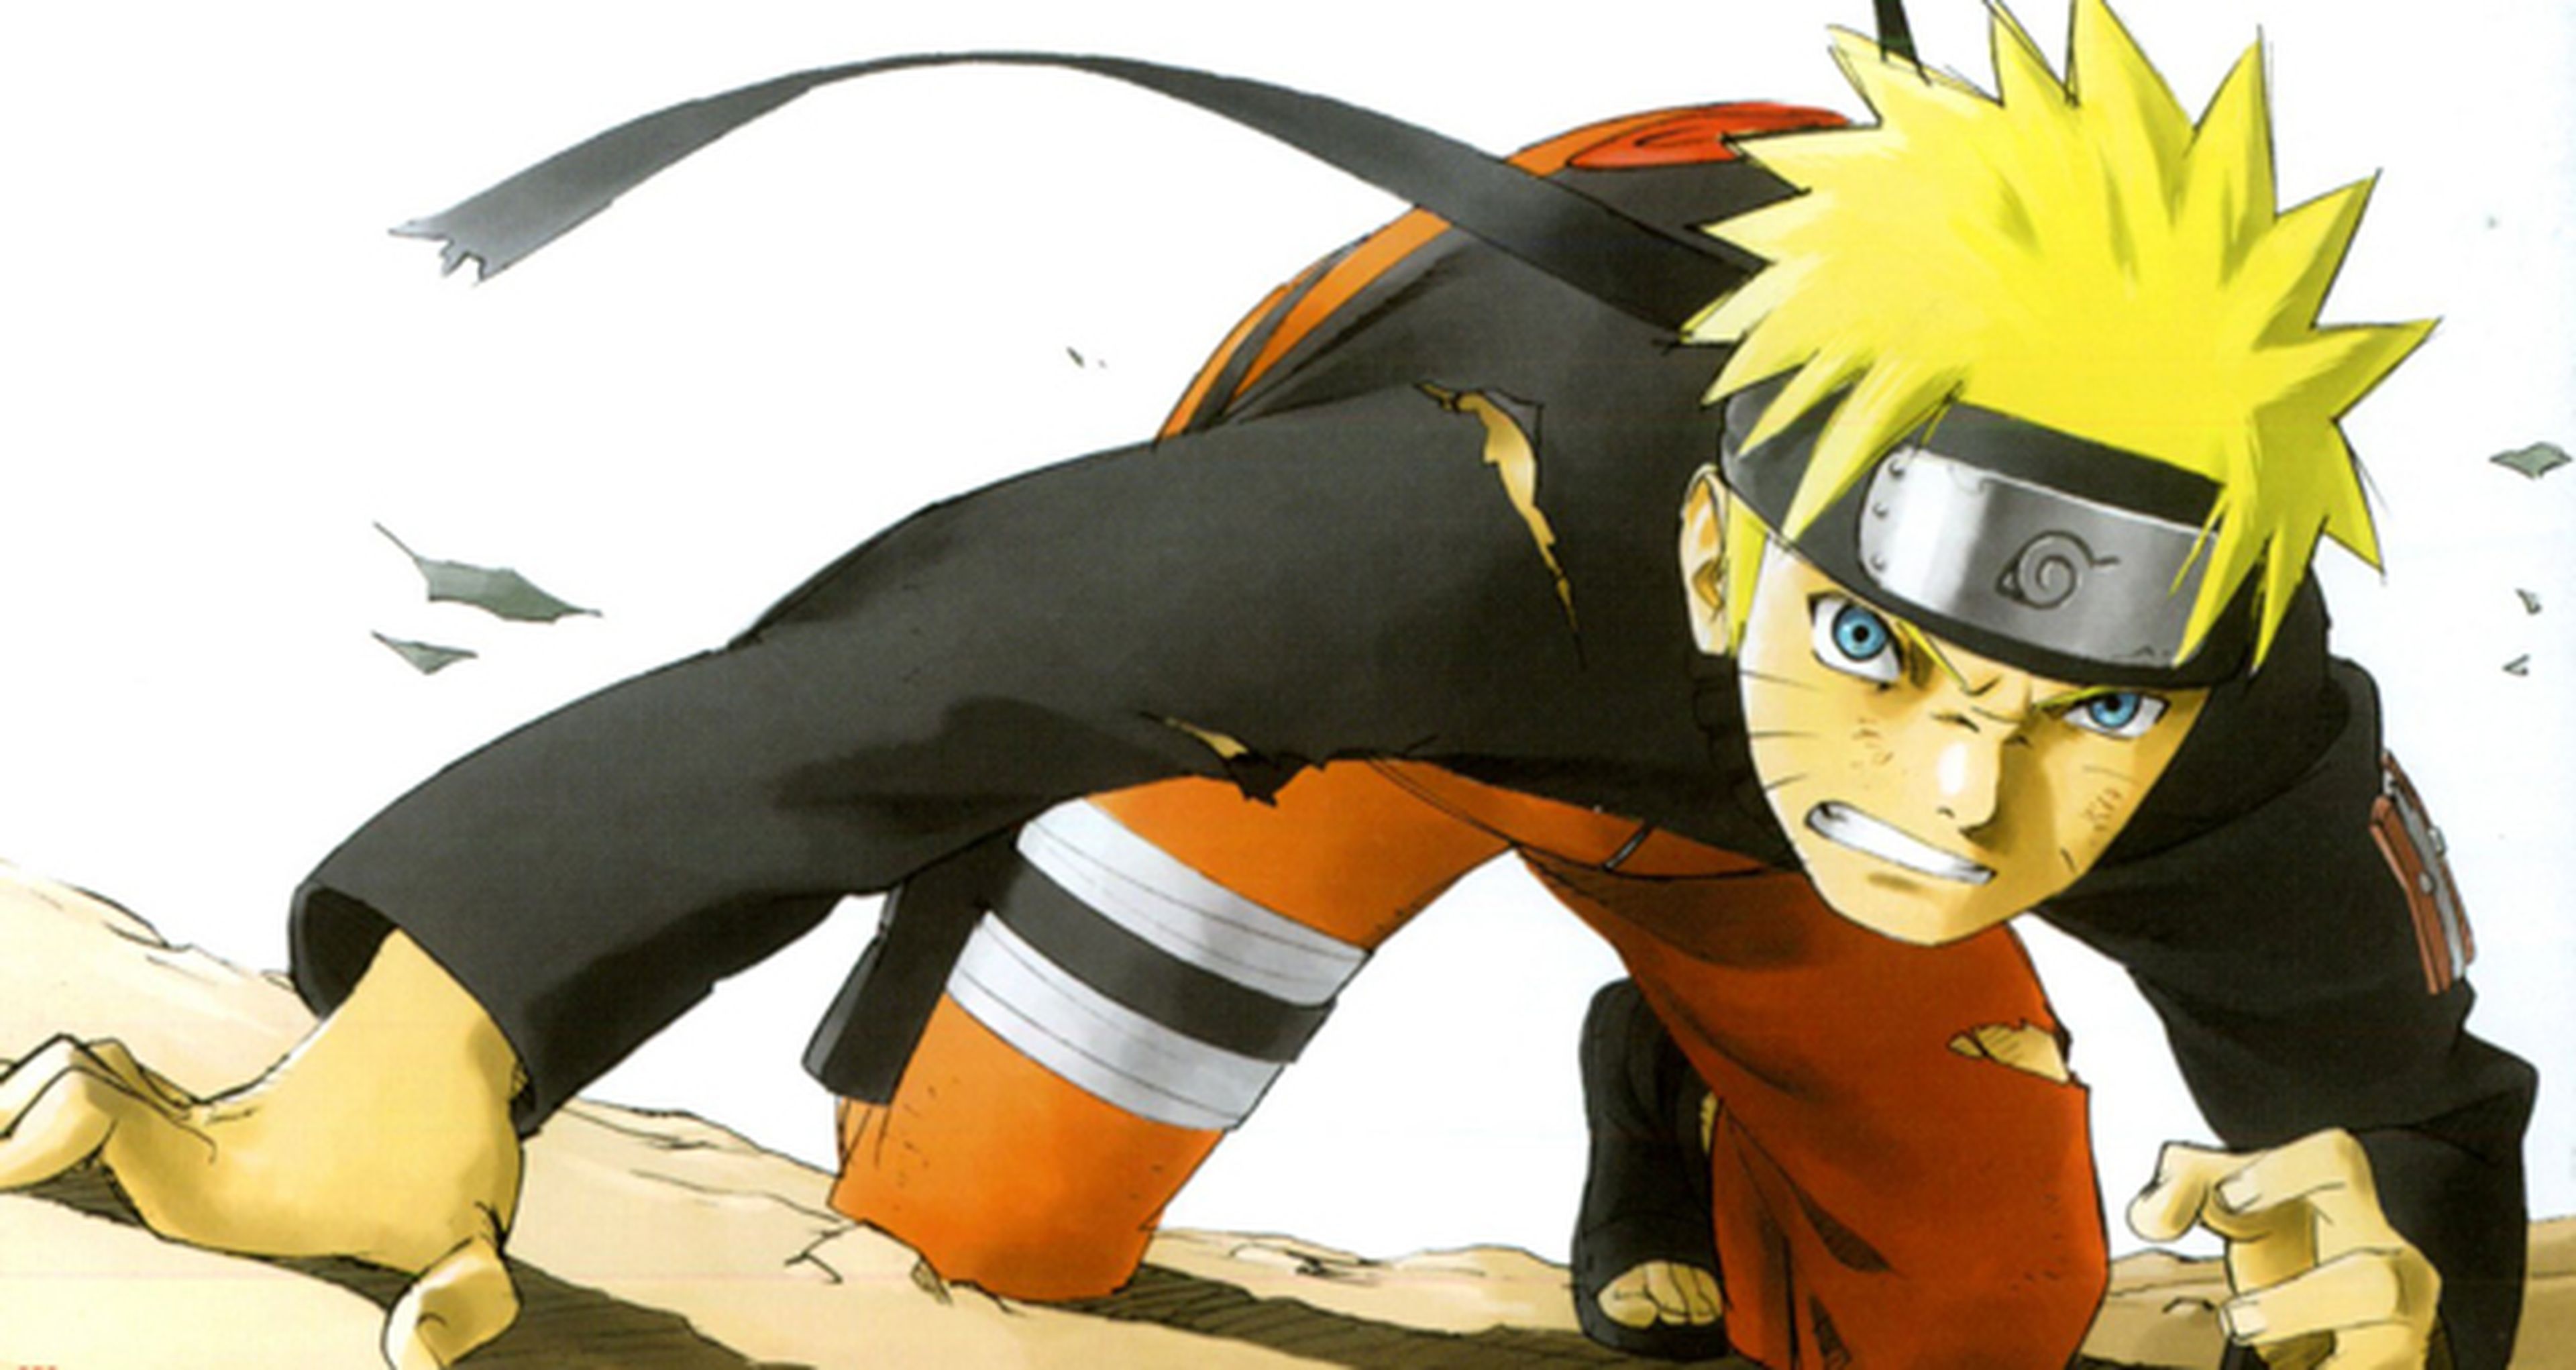 Naruto - El primer anime cómic llega en mayo